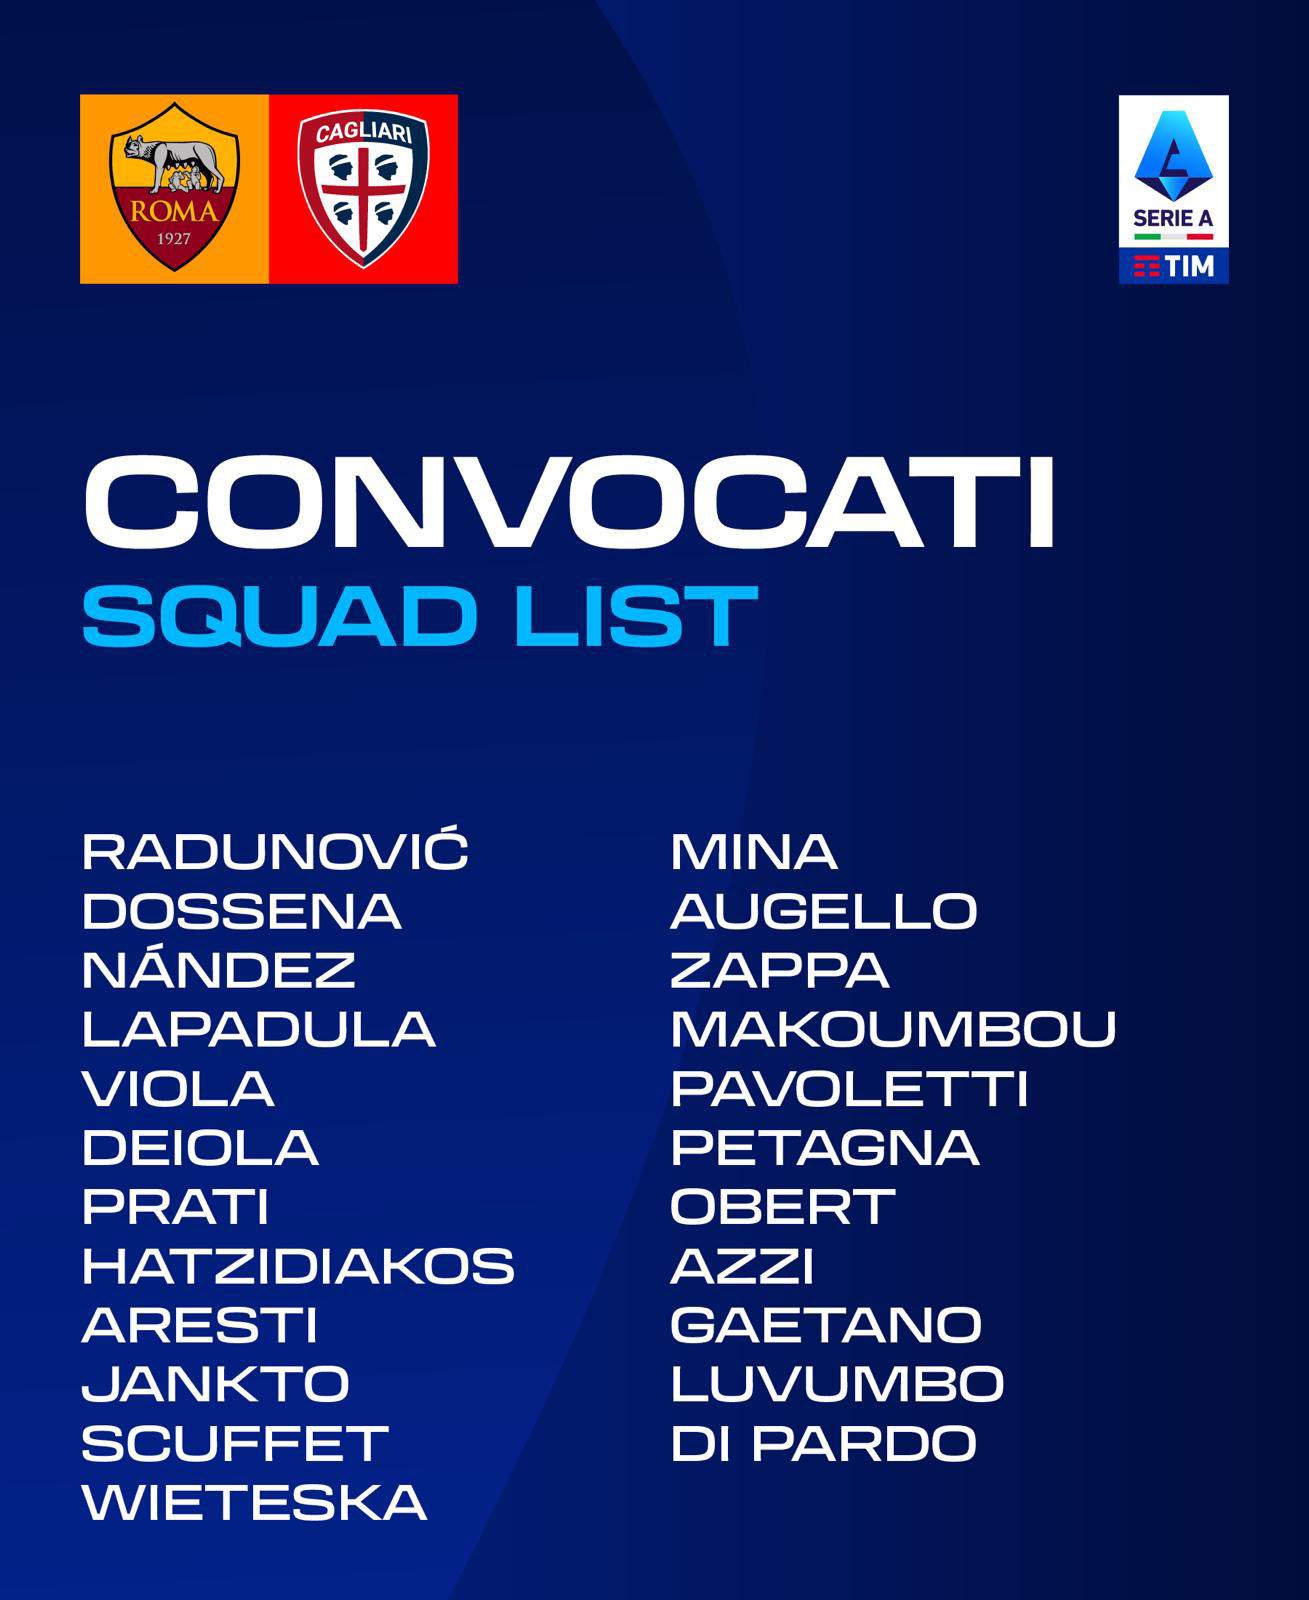 Gianluca Lapadula fue convocado para el duelo entre Cagliari vs AS Roma por la Serie A. - créditos: Cagliari Calcio